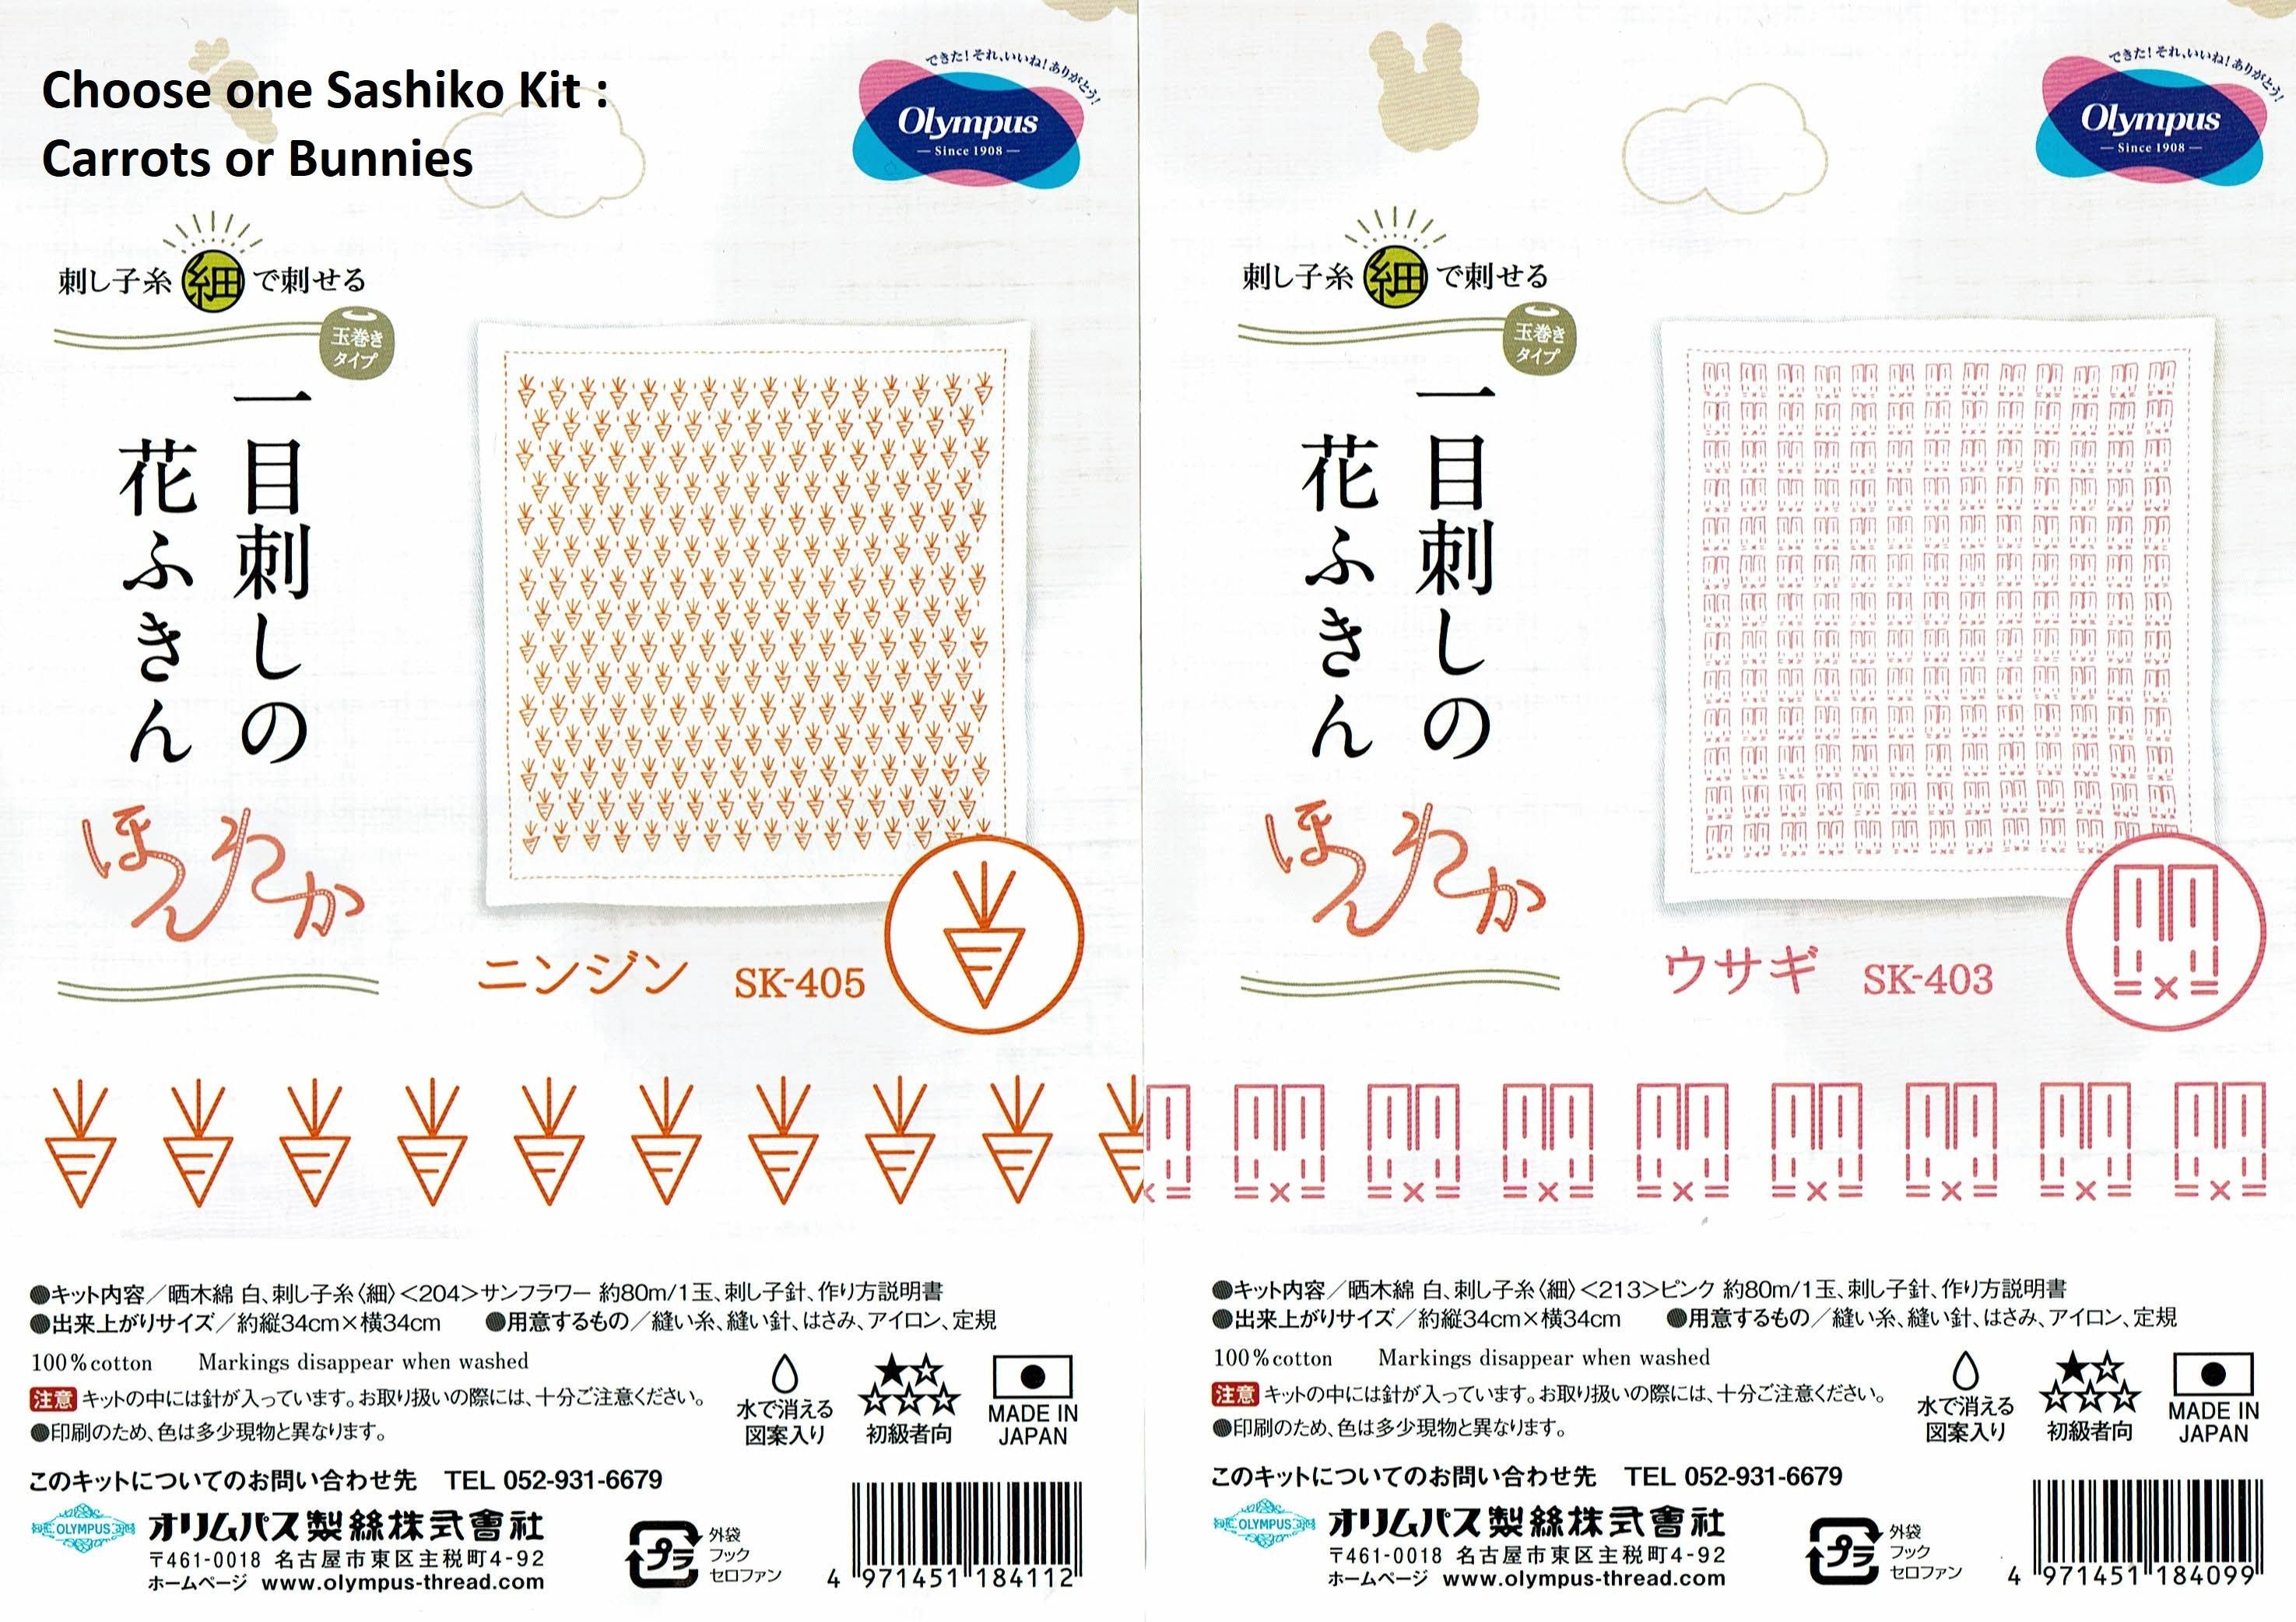 Olympus hitomezashi sashiko pre-printed wash-away pattern sampler kit -  bunny rabbits or carrots